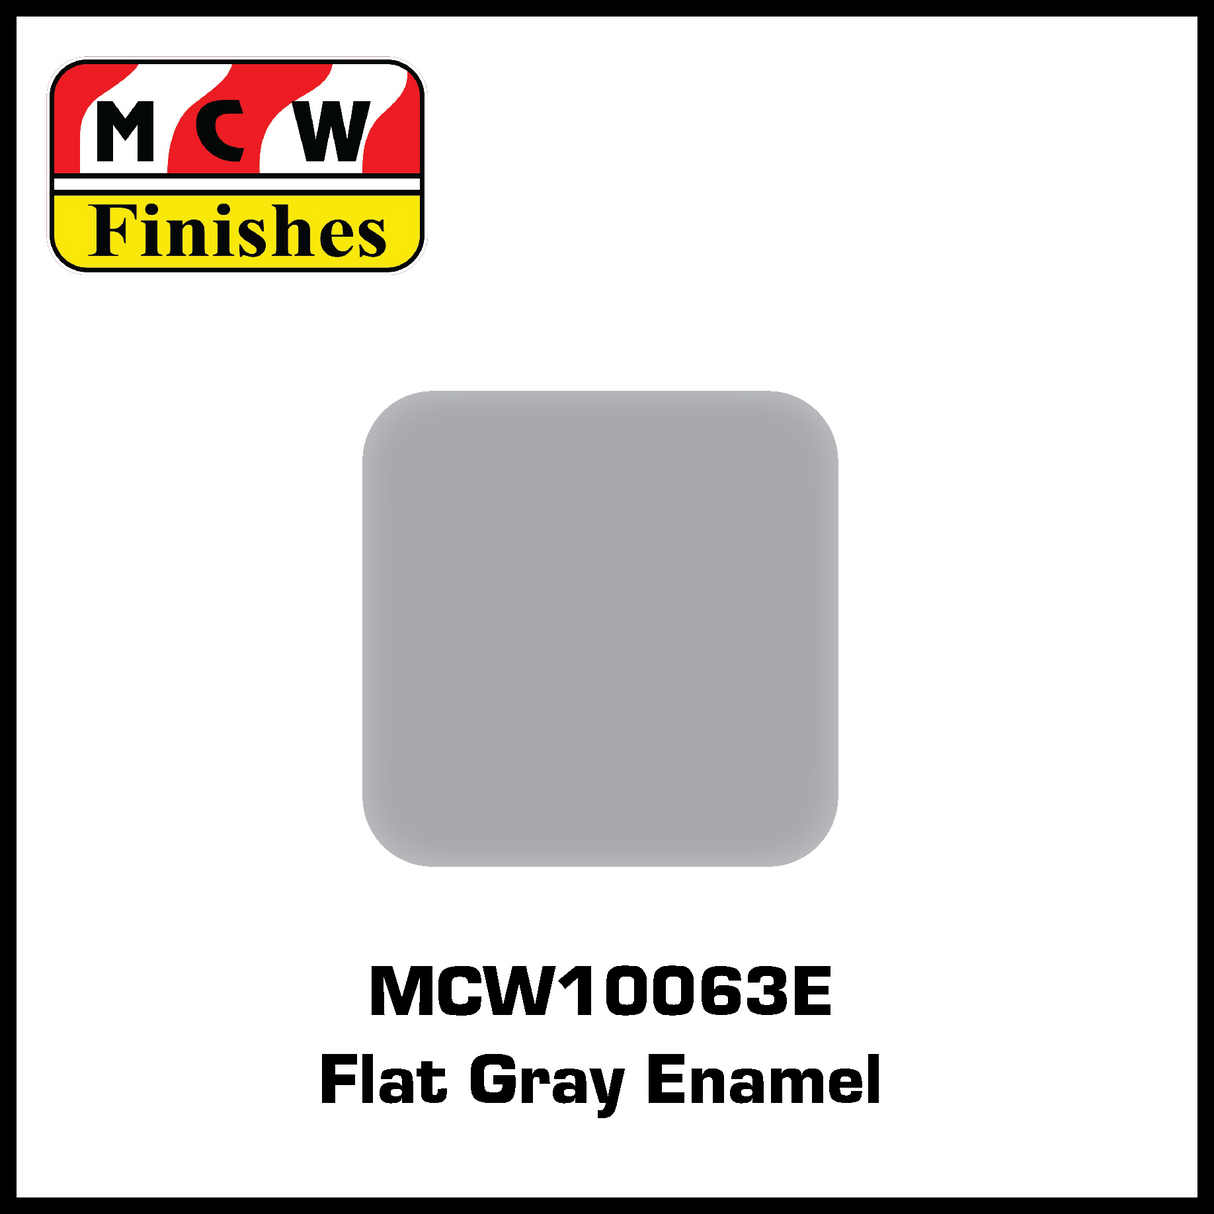 MCW Finishes Flat Gray Enamel